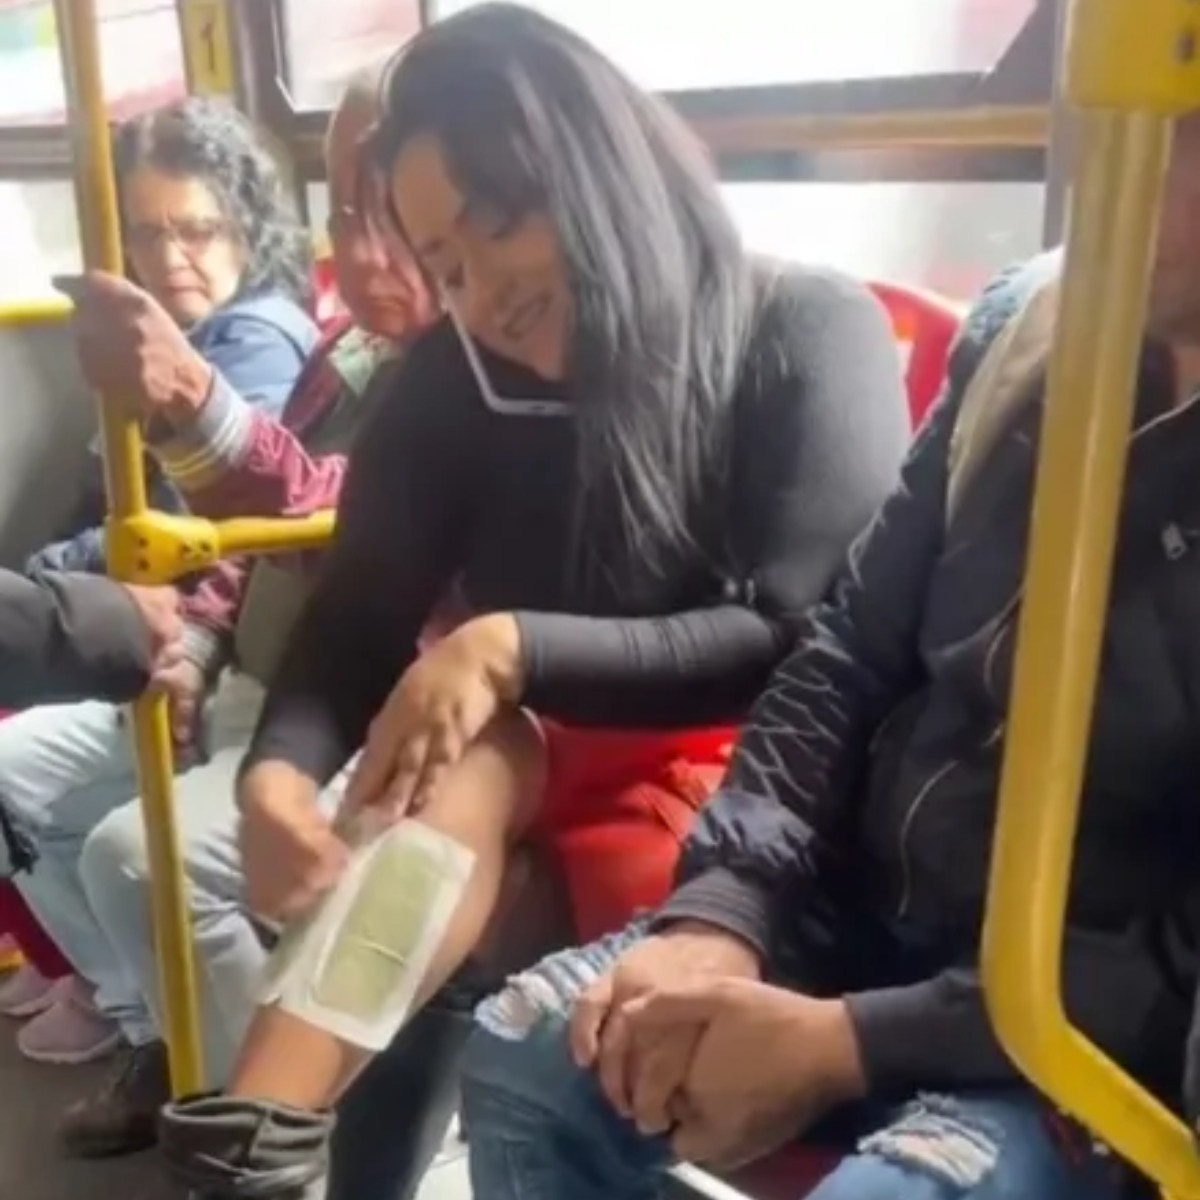  Passageira é flagrada se depilando com cera em ônibus e viraliza na internet 